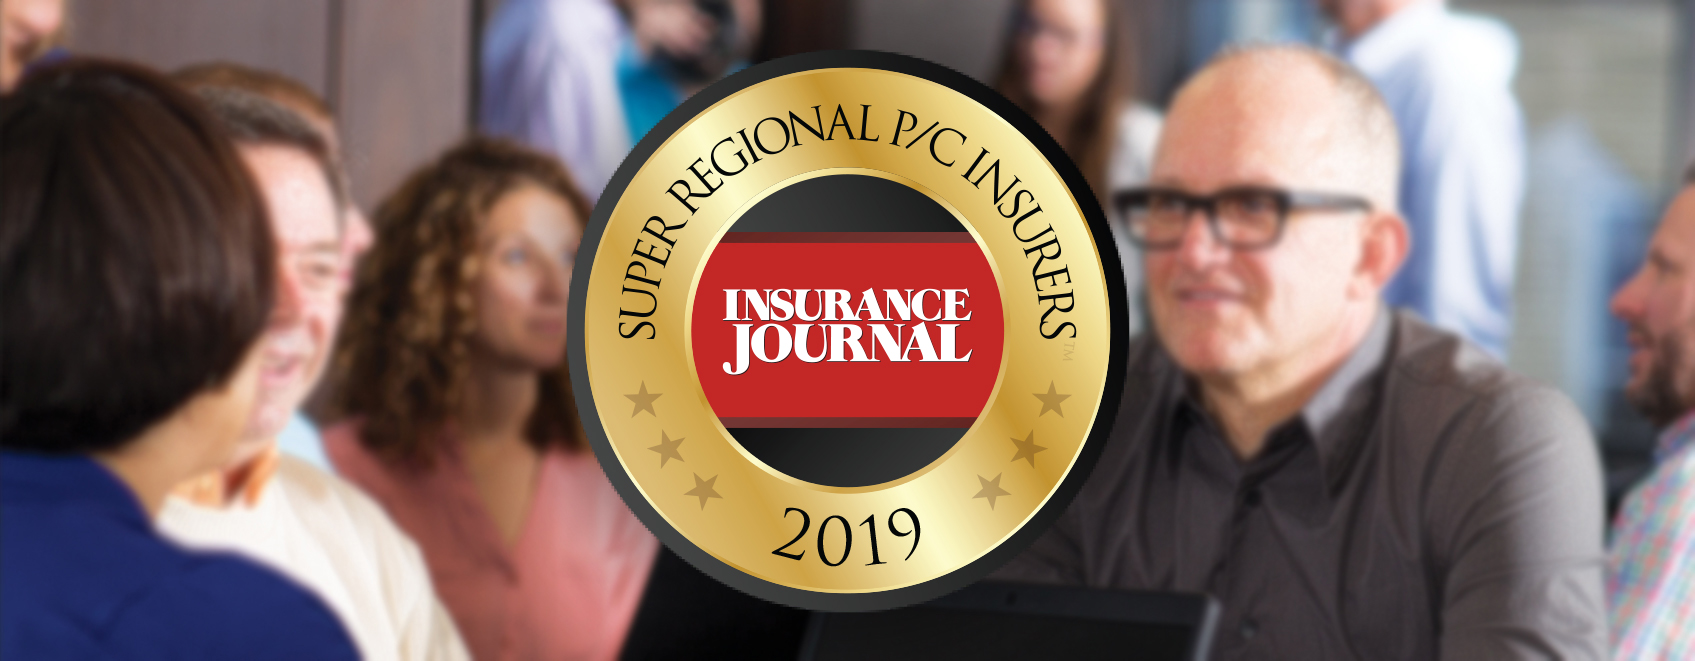 Badge recognizing UFG as Insurance Journal's Super Regional P & C Insurer award for 2019